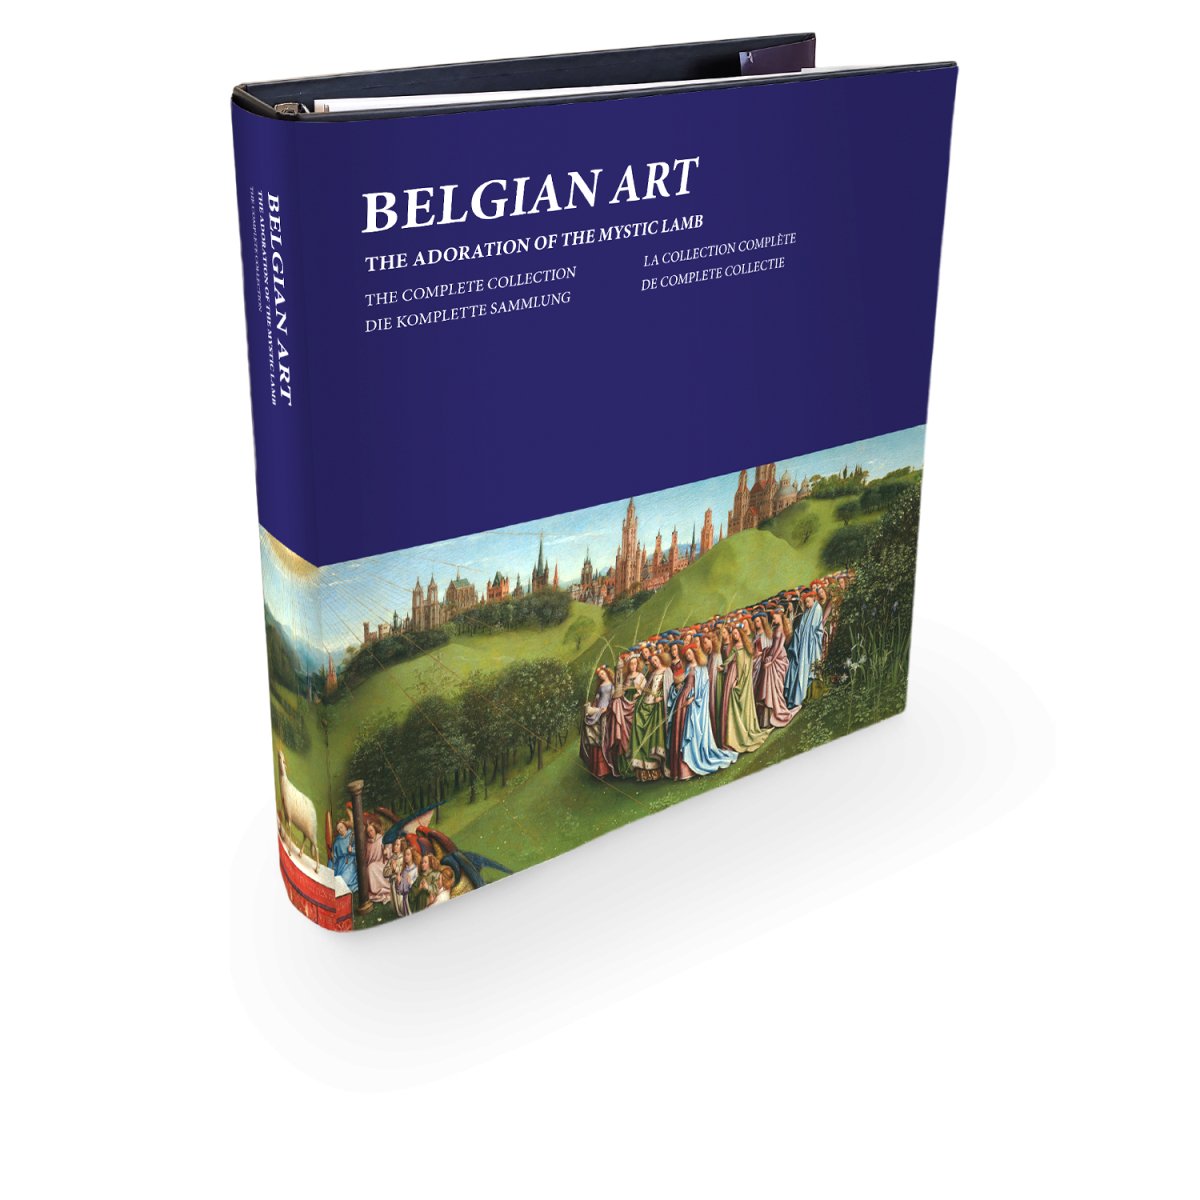 Verzamelalbum “De Geschiedenis van de Belgische Kunst - Edel Collecties